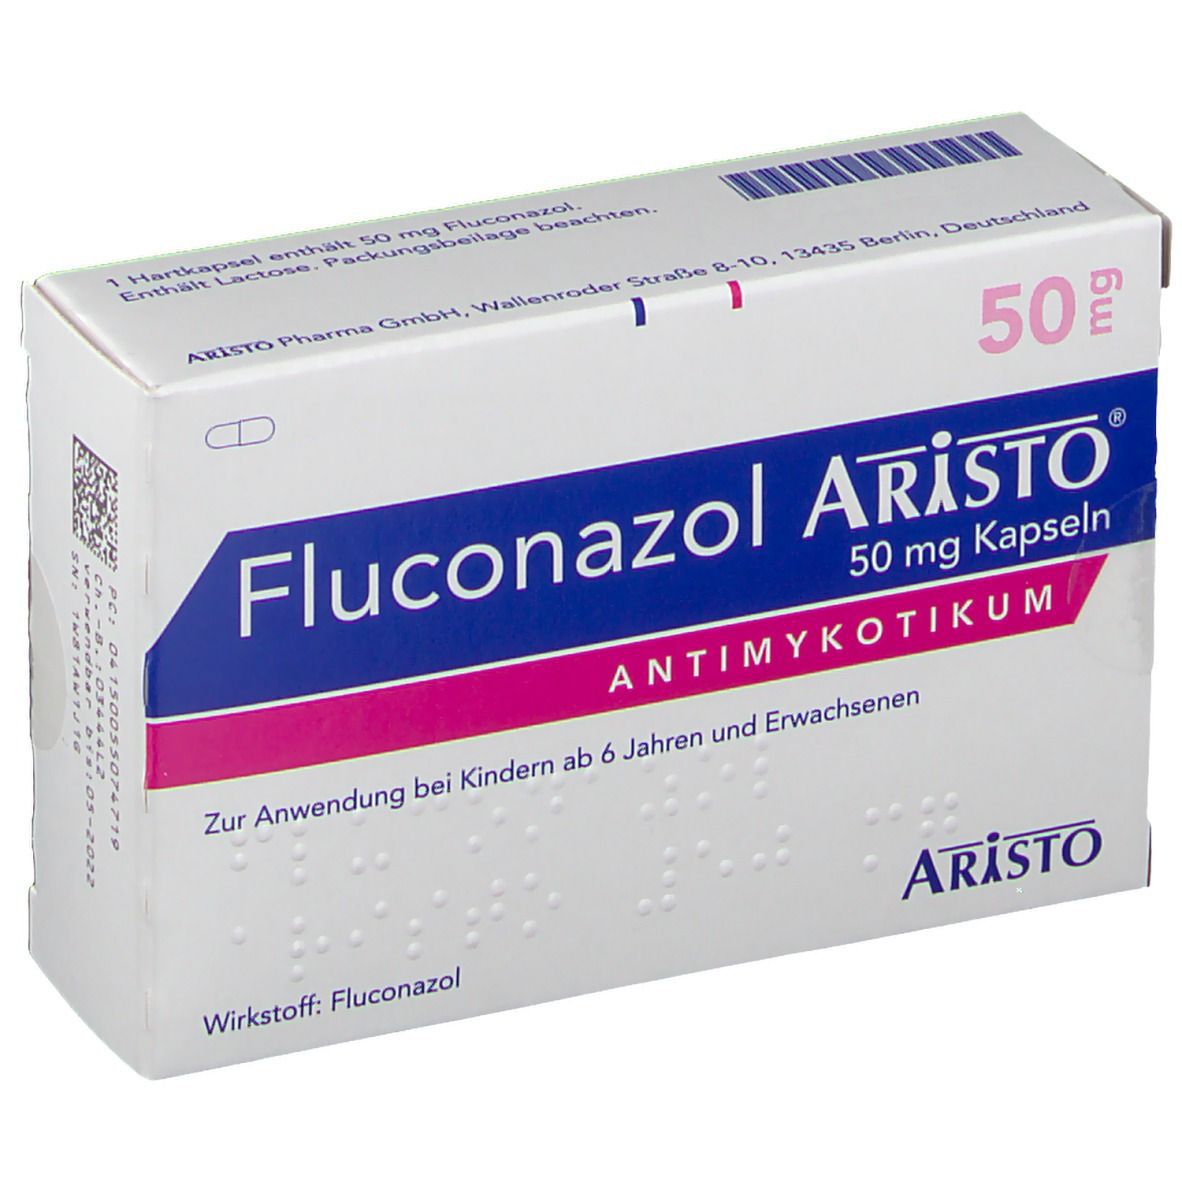 Fluconazol Aristo® 50 mg